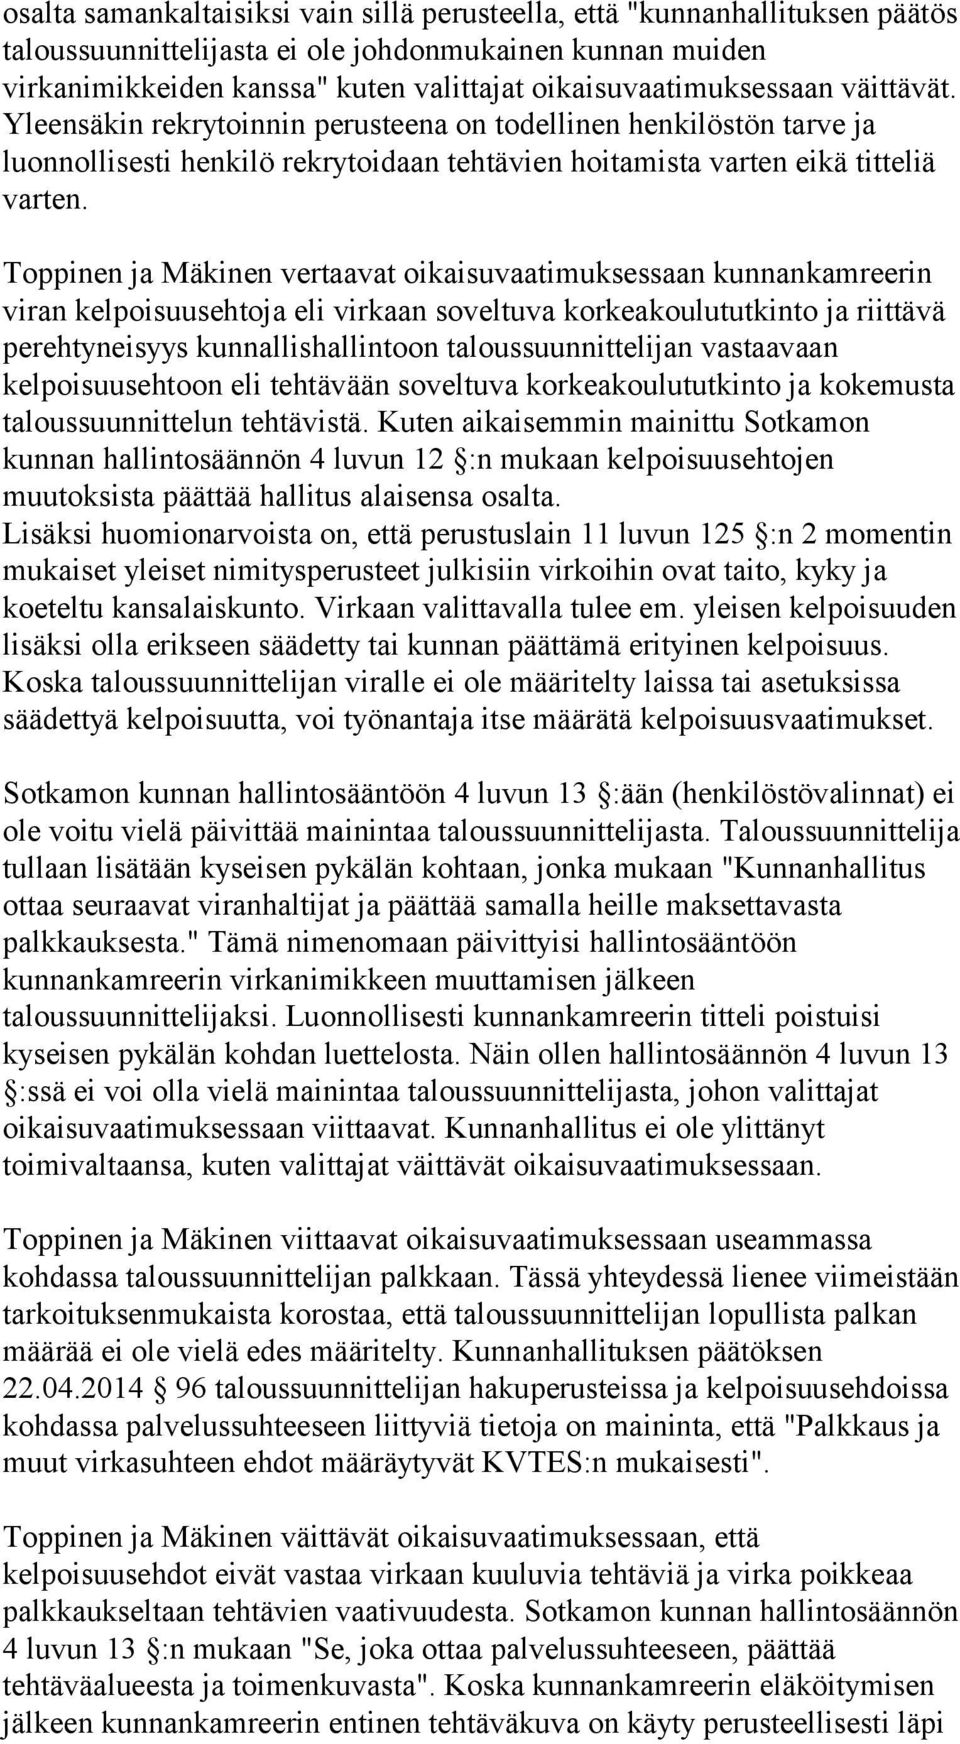 Toppinen ja Mäkinen vertaavat oikaisuvaatimuksessaan kunnankamreerin viran kelpoisuusehtoja eli virkaan soveltuva korkeakoulututkinto ja riittävä perehtyneisyys kunnallishallintoon